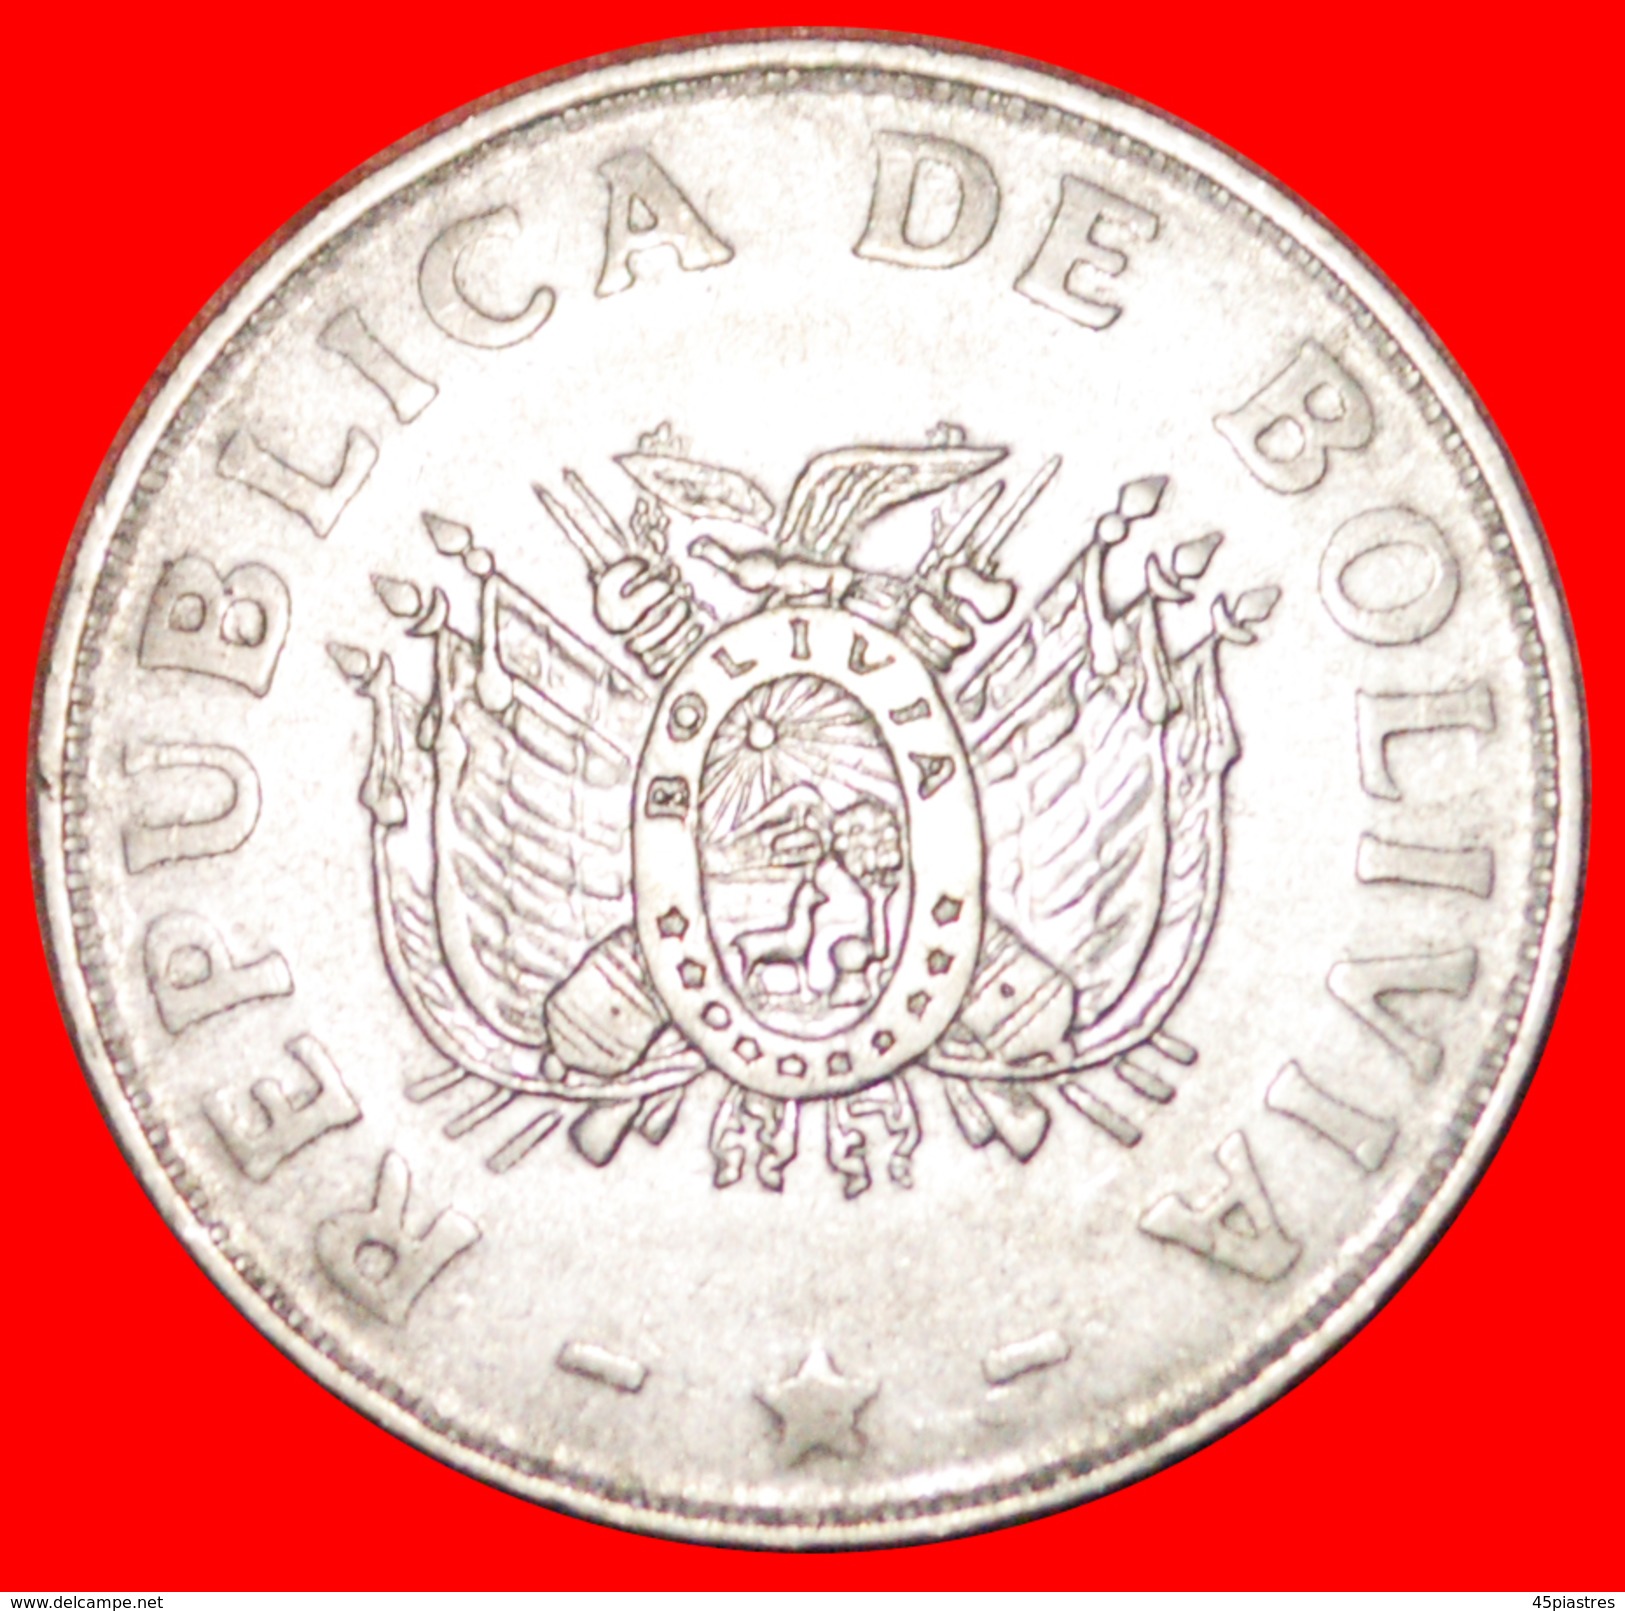 § SUN: BOLIVIA &#x2605; 50 CENTAVOS 1991! LOW START&#x2605; NO RESERVE! - Bolivie